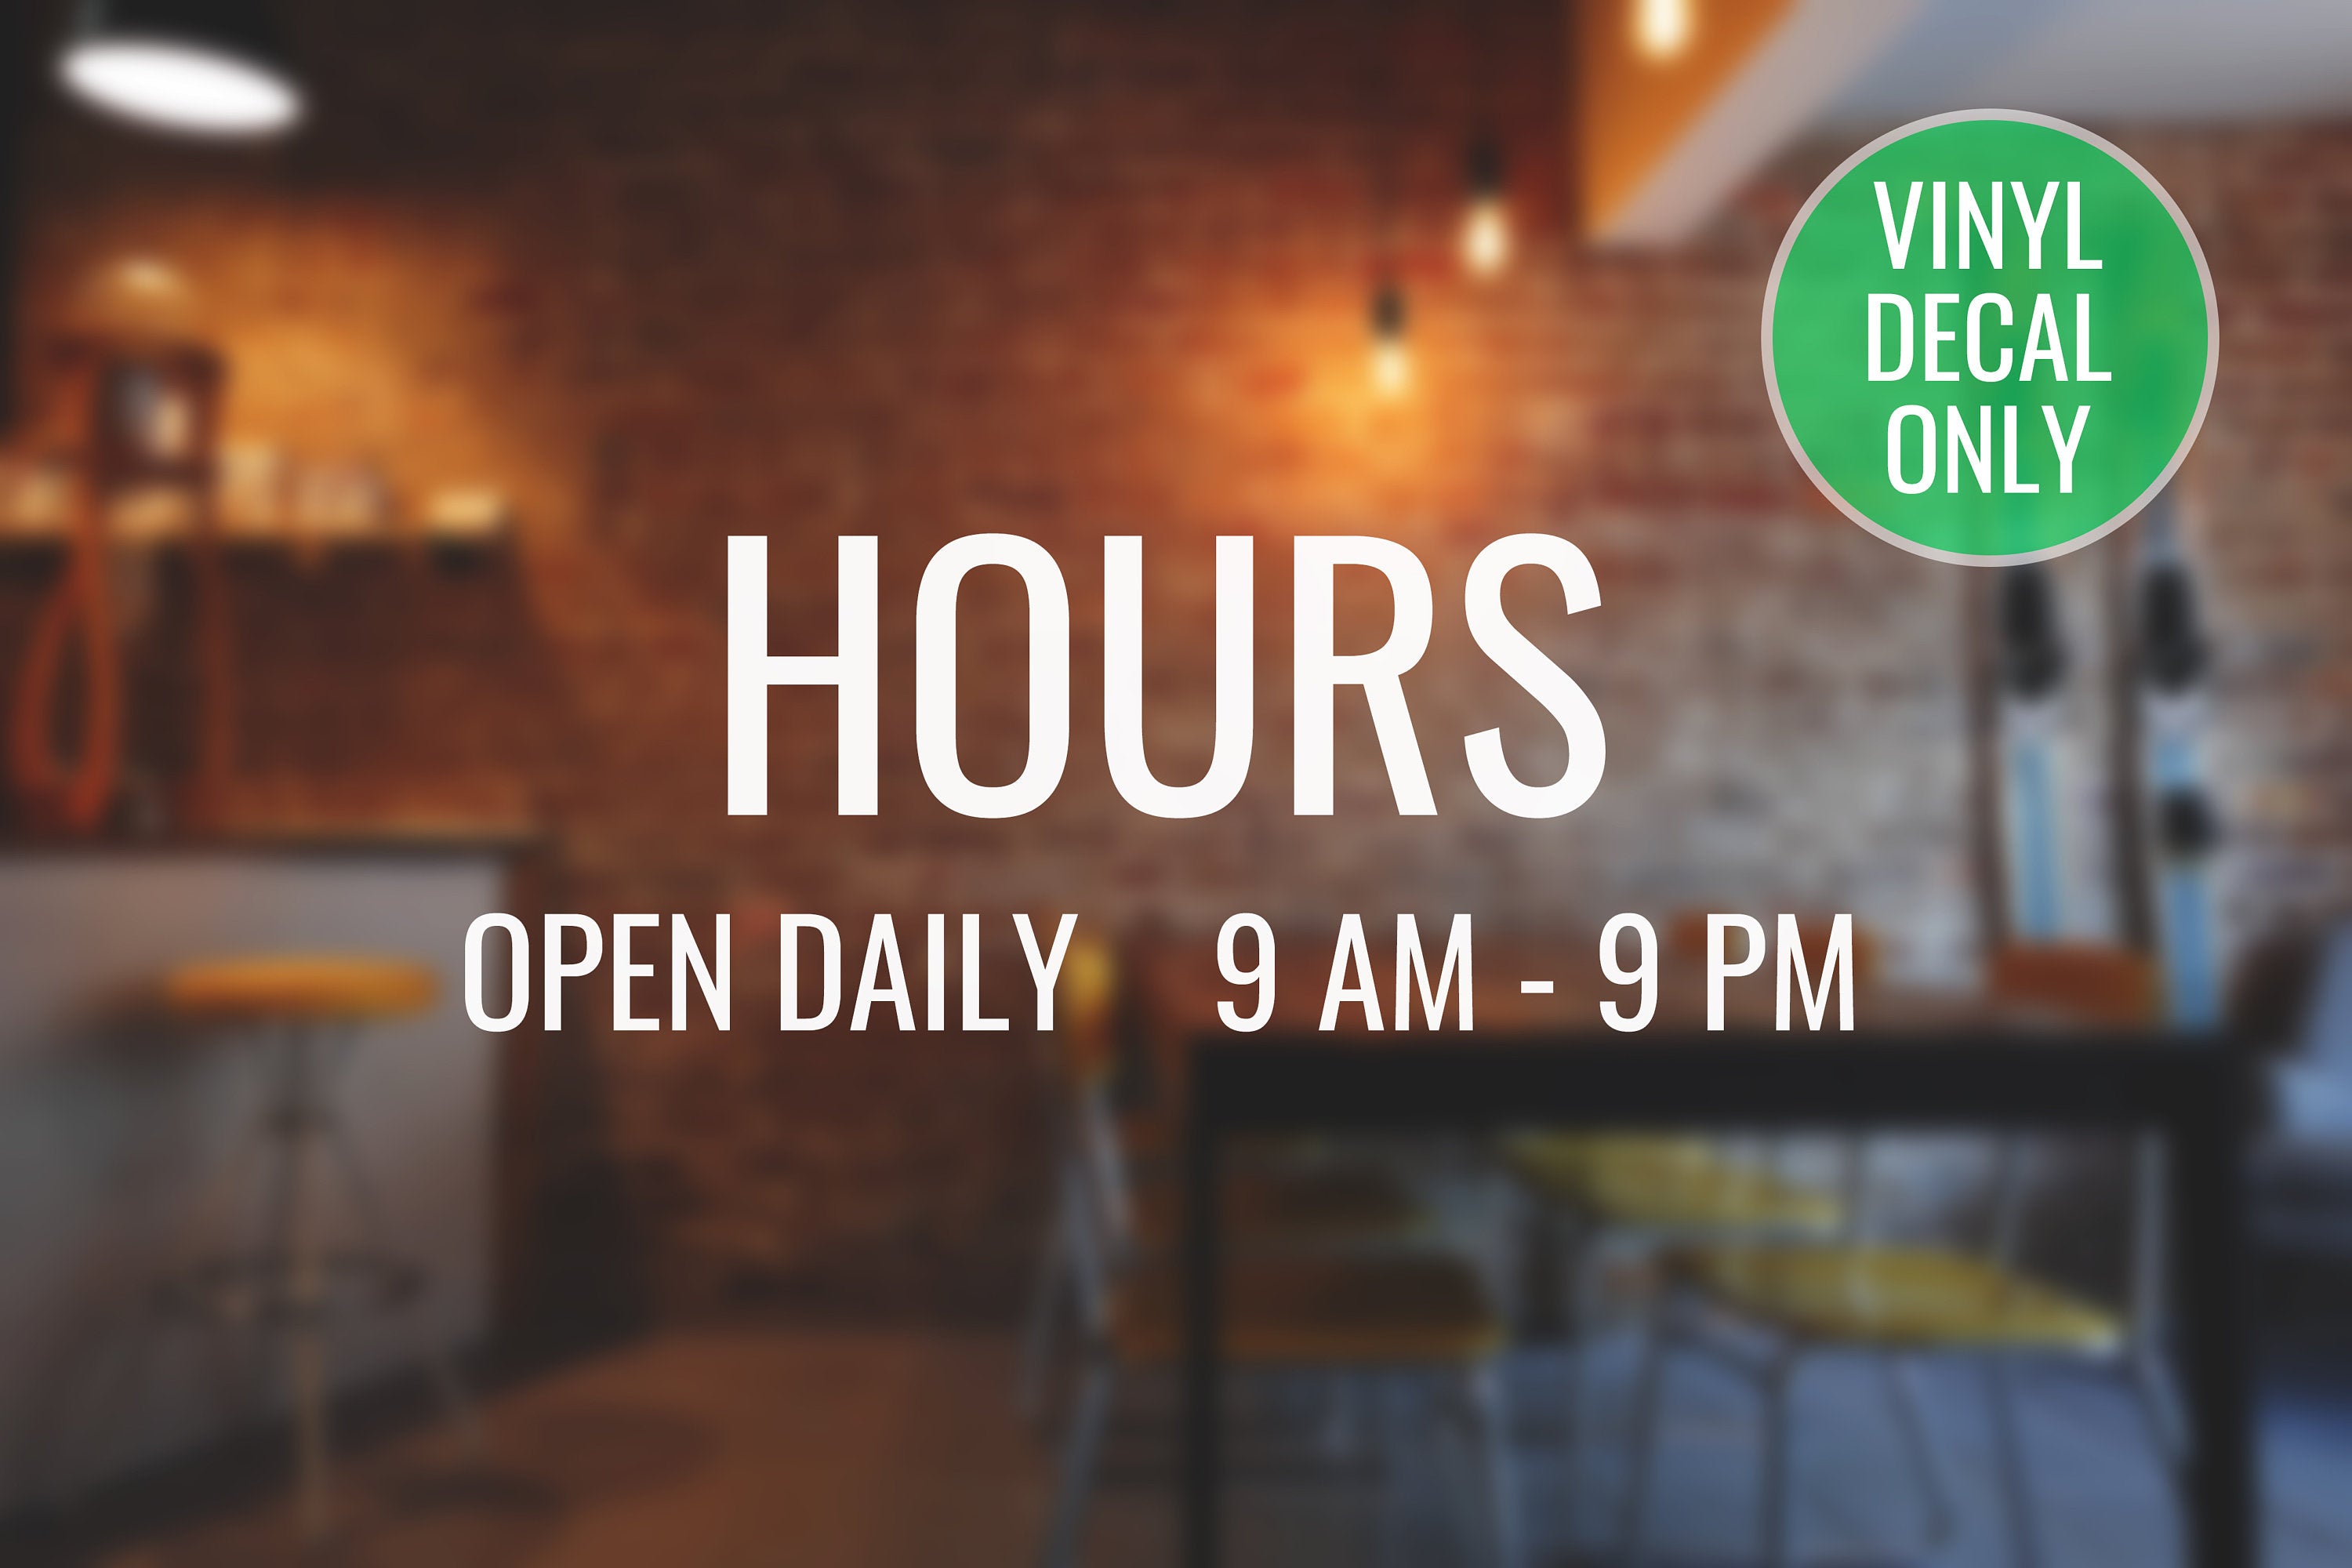 Business Hours Decal - Vinyl Sticker for Storefront, Doors, Windows, Restaurants, Store Open Hour!